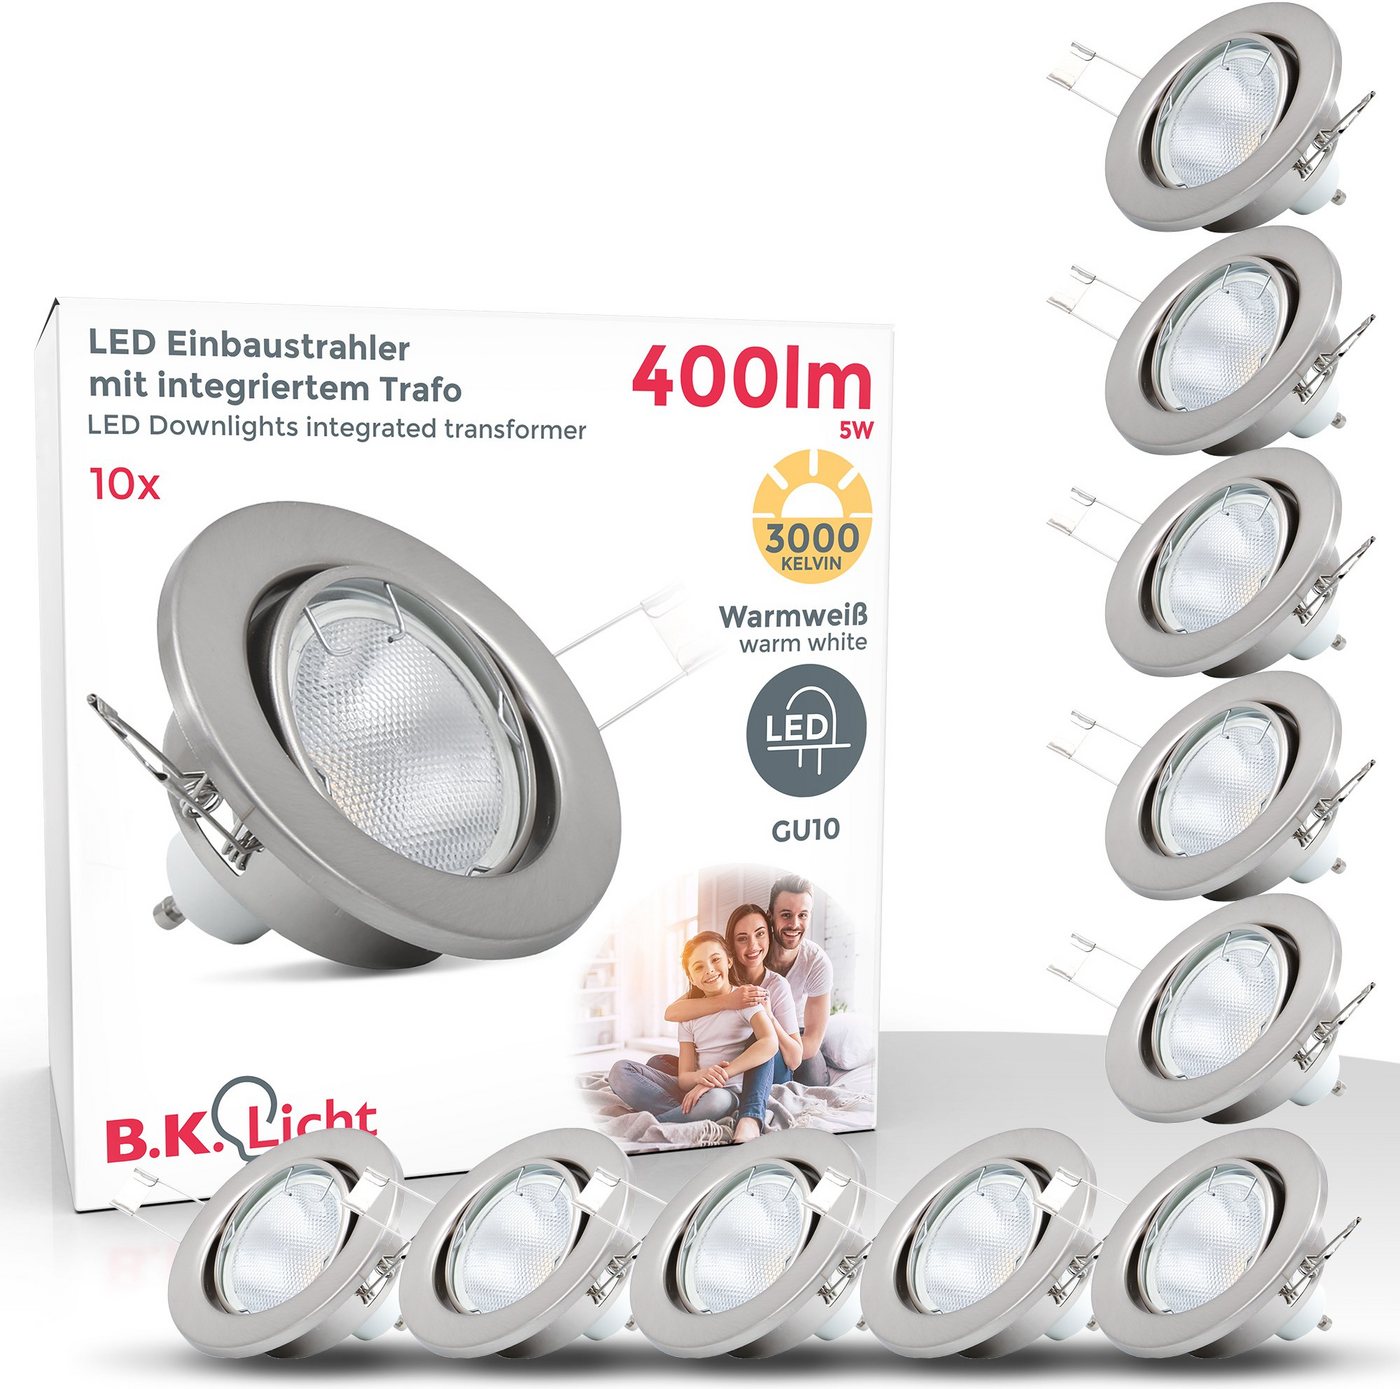 B.K.Licht LED Einbaustrahler, LED wechselbar, Warmweiß, LED Einbauleuchten, schwenkbar, Einbau-Spots, nickel, matt GU10 von B.K.Licht